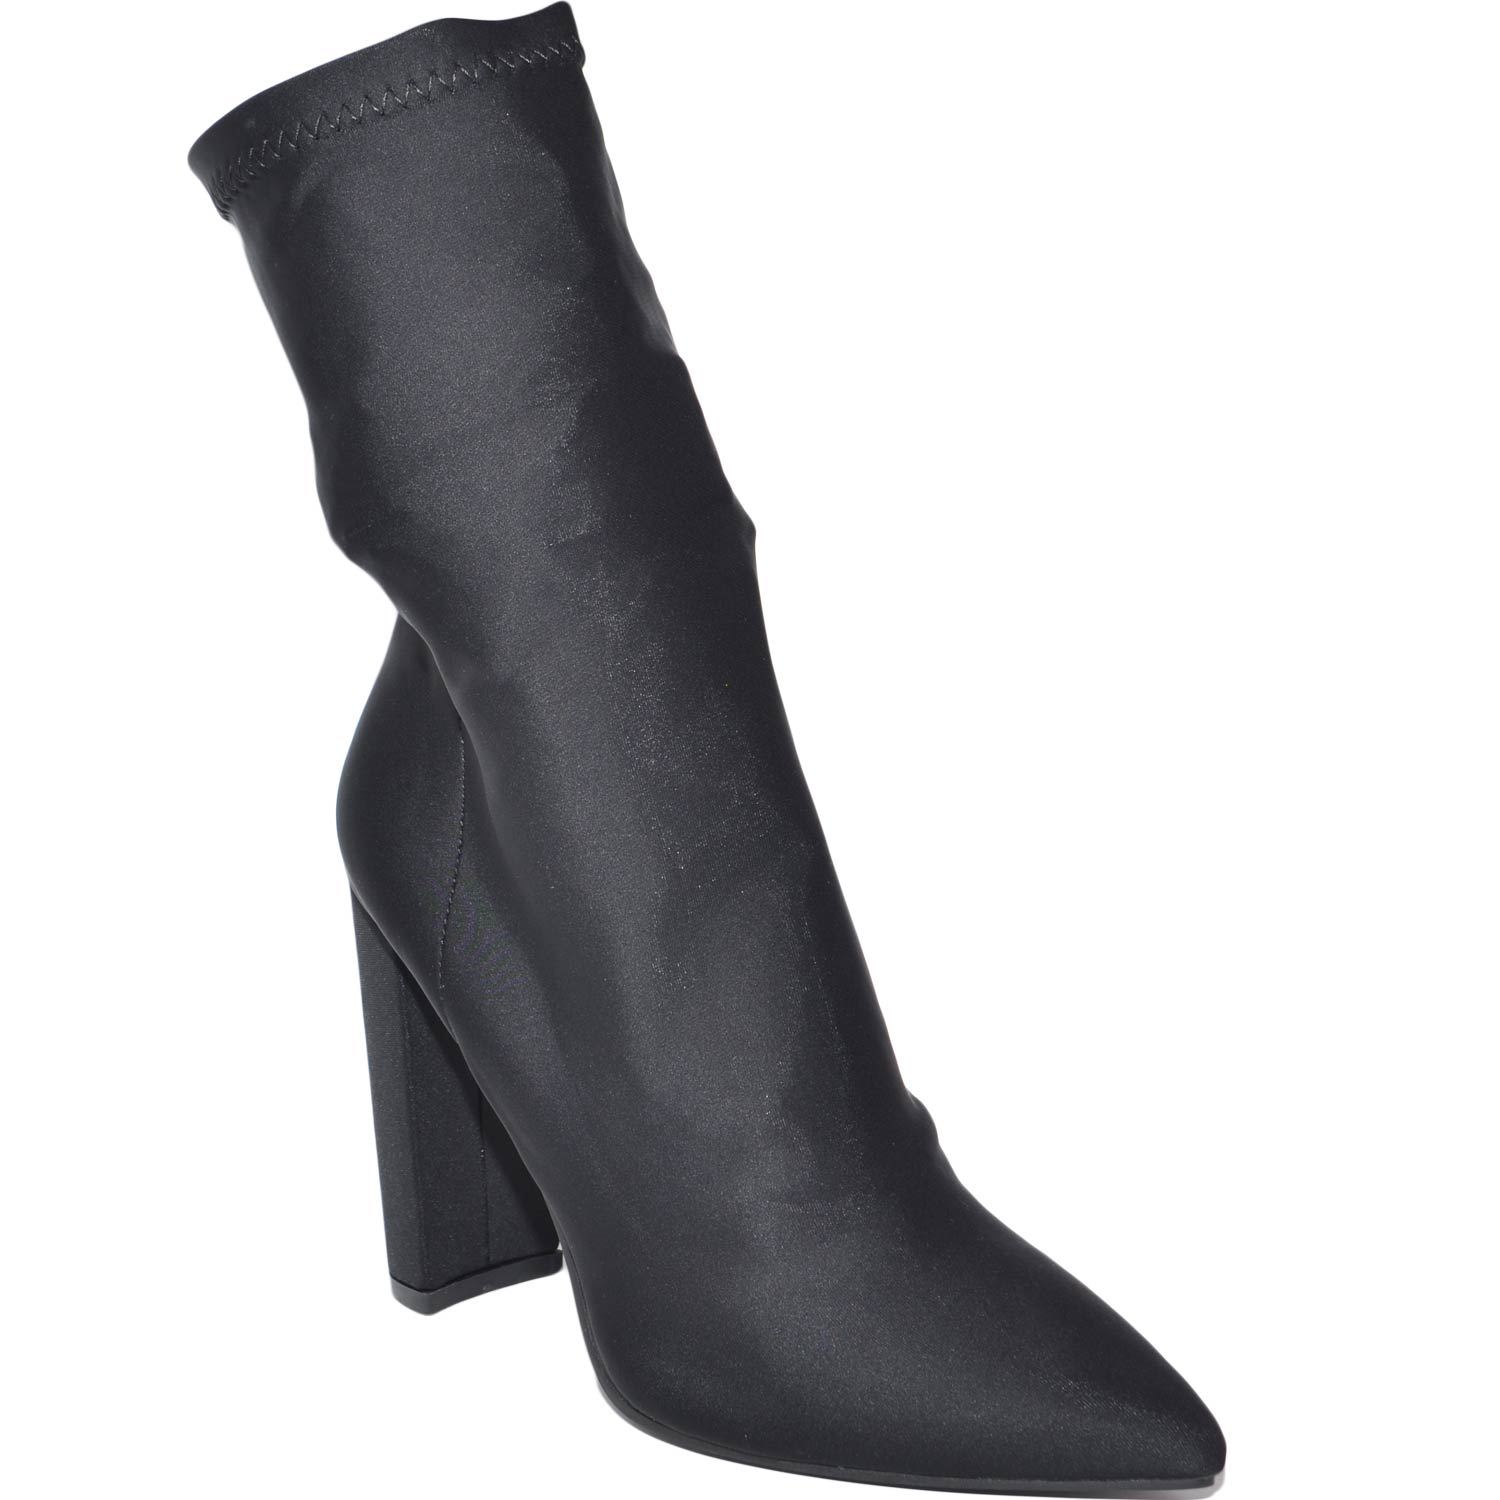 Tronchetto donna nero a punta in lycra elastica traslucida con tacco doppio altezza caviglia glamour slim fit tendenza